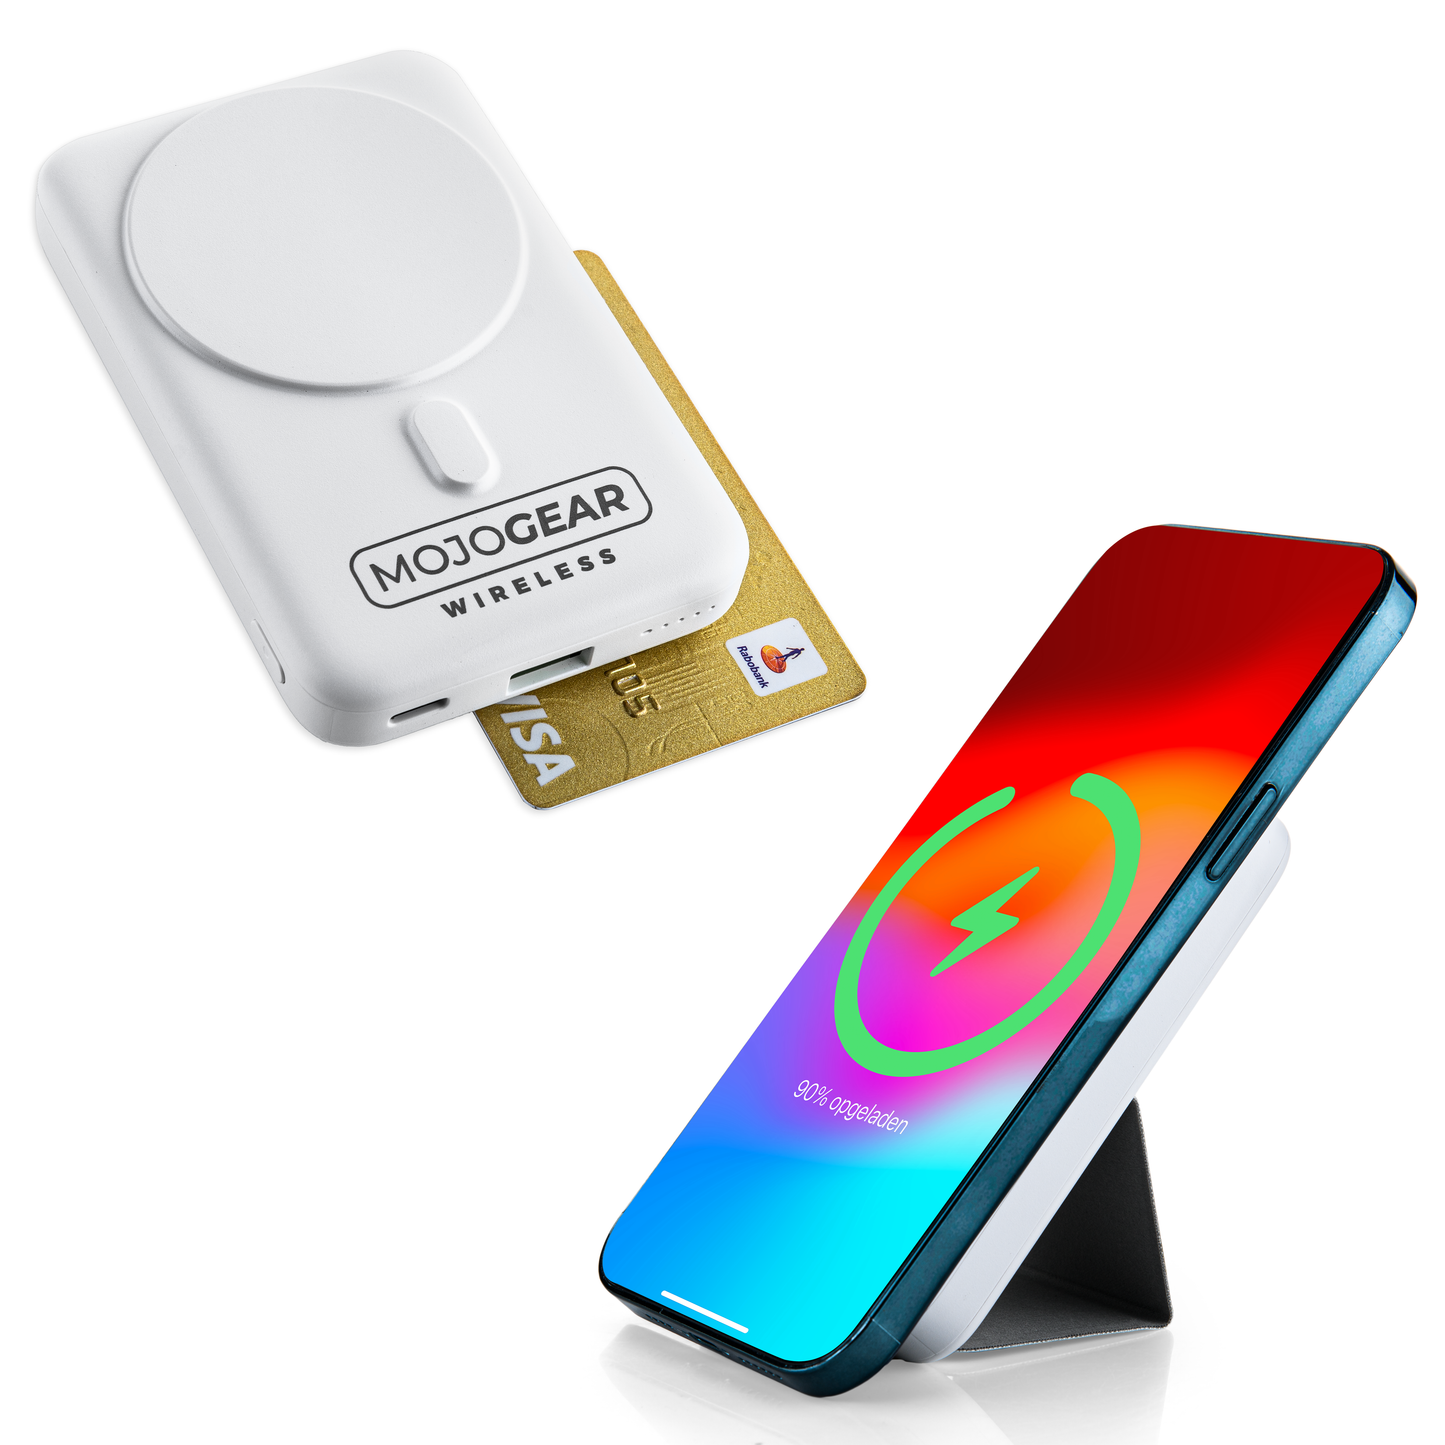 MOJOGEAR Wireless MagSafe powerbank 10.000 mAh - Magnetisch en Draadloos voor Android en iPhone - Met bureau-standaard - Zwart/Wit